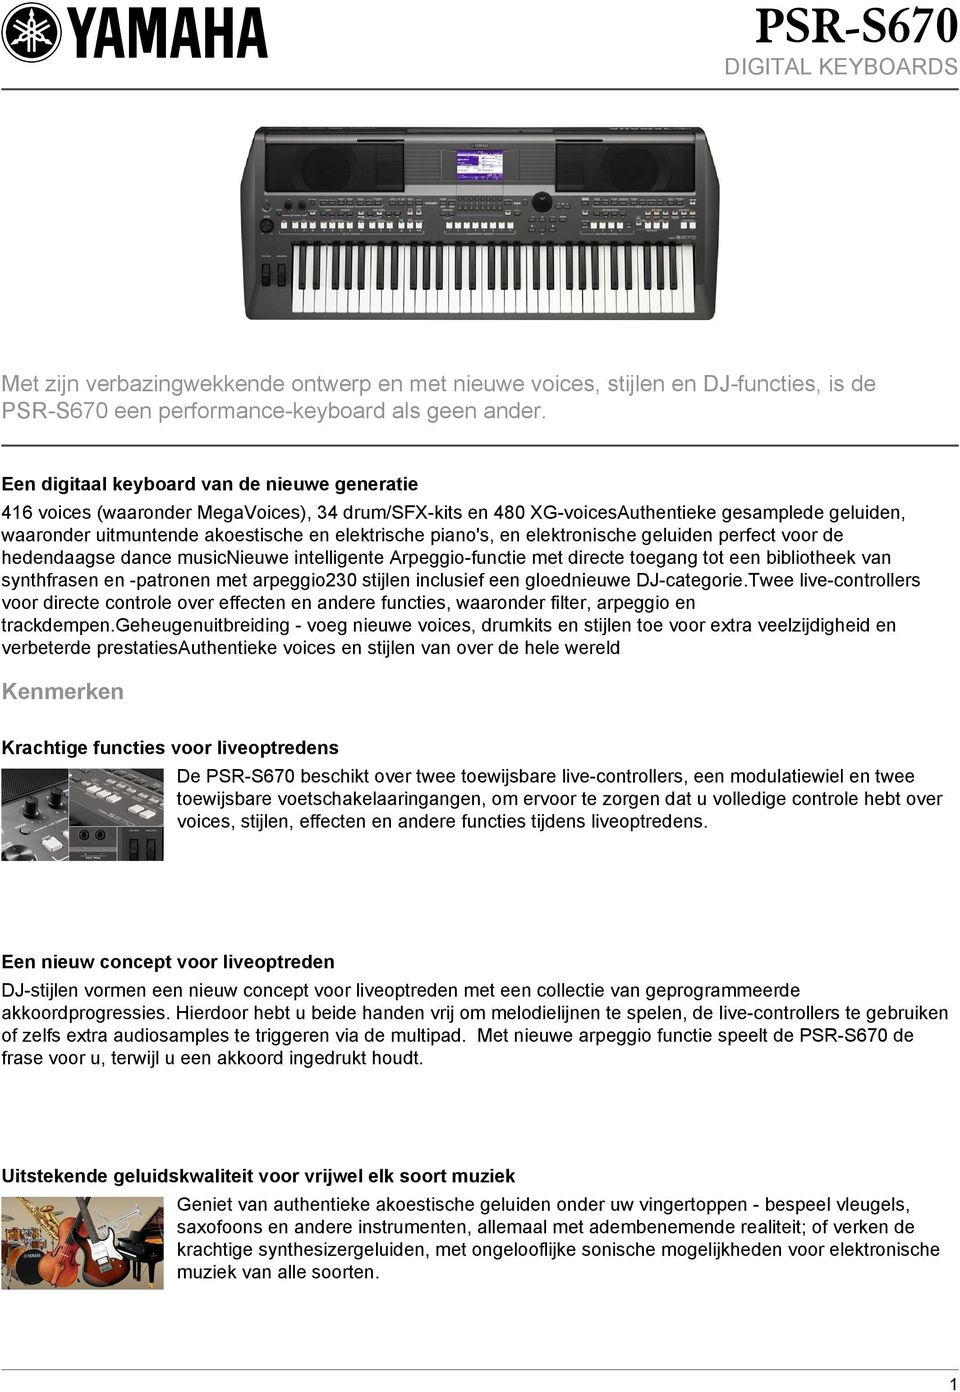 piano's, en elektronische geluiden perfect voor de hedendaagse dance musicnieuwe intelligente Arpeggio-functie met directe toegang tot een bibliotheek van synthfrasen en -patronen met arpeggio230